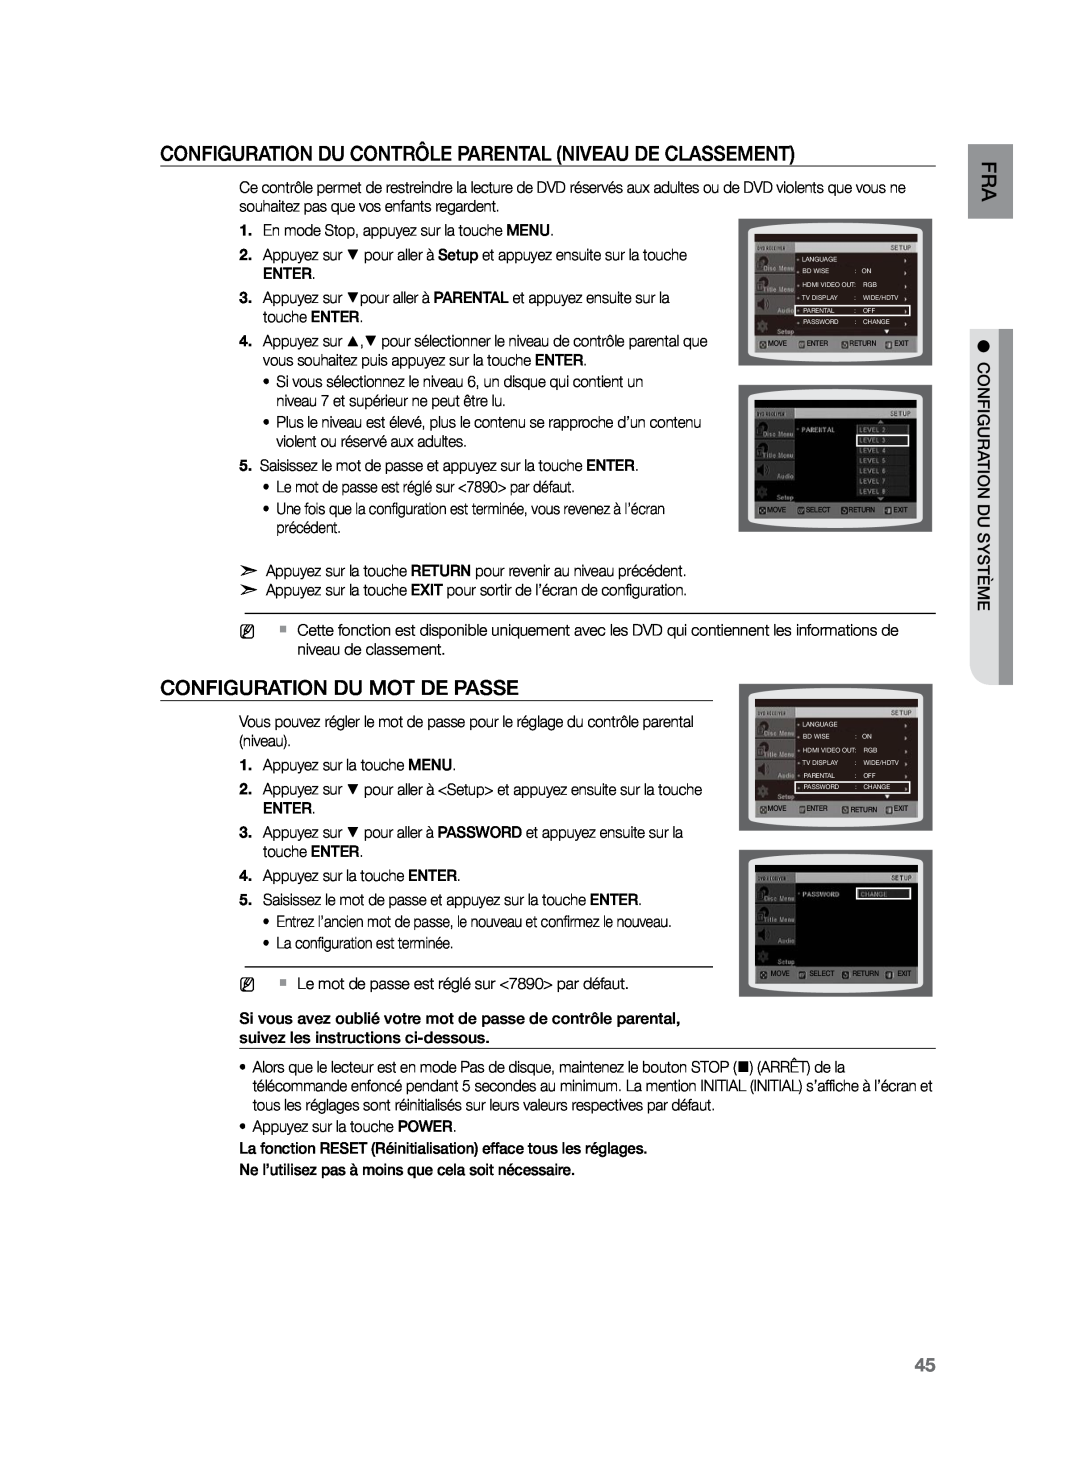 Samsung HT-Z220R/XEF manual Configuration du contrôle parental Niveau de classement, Configuration du mot de passe, Enter 